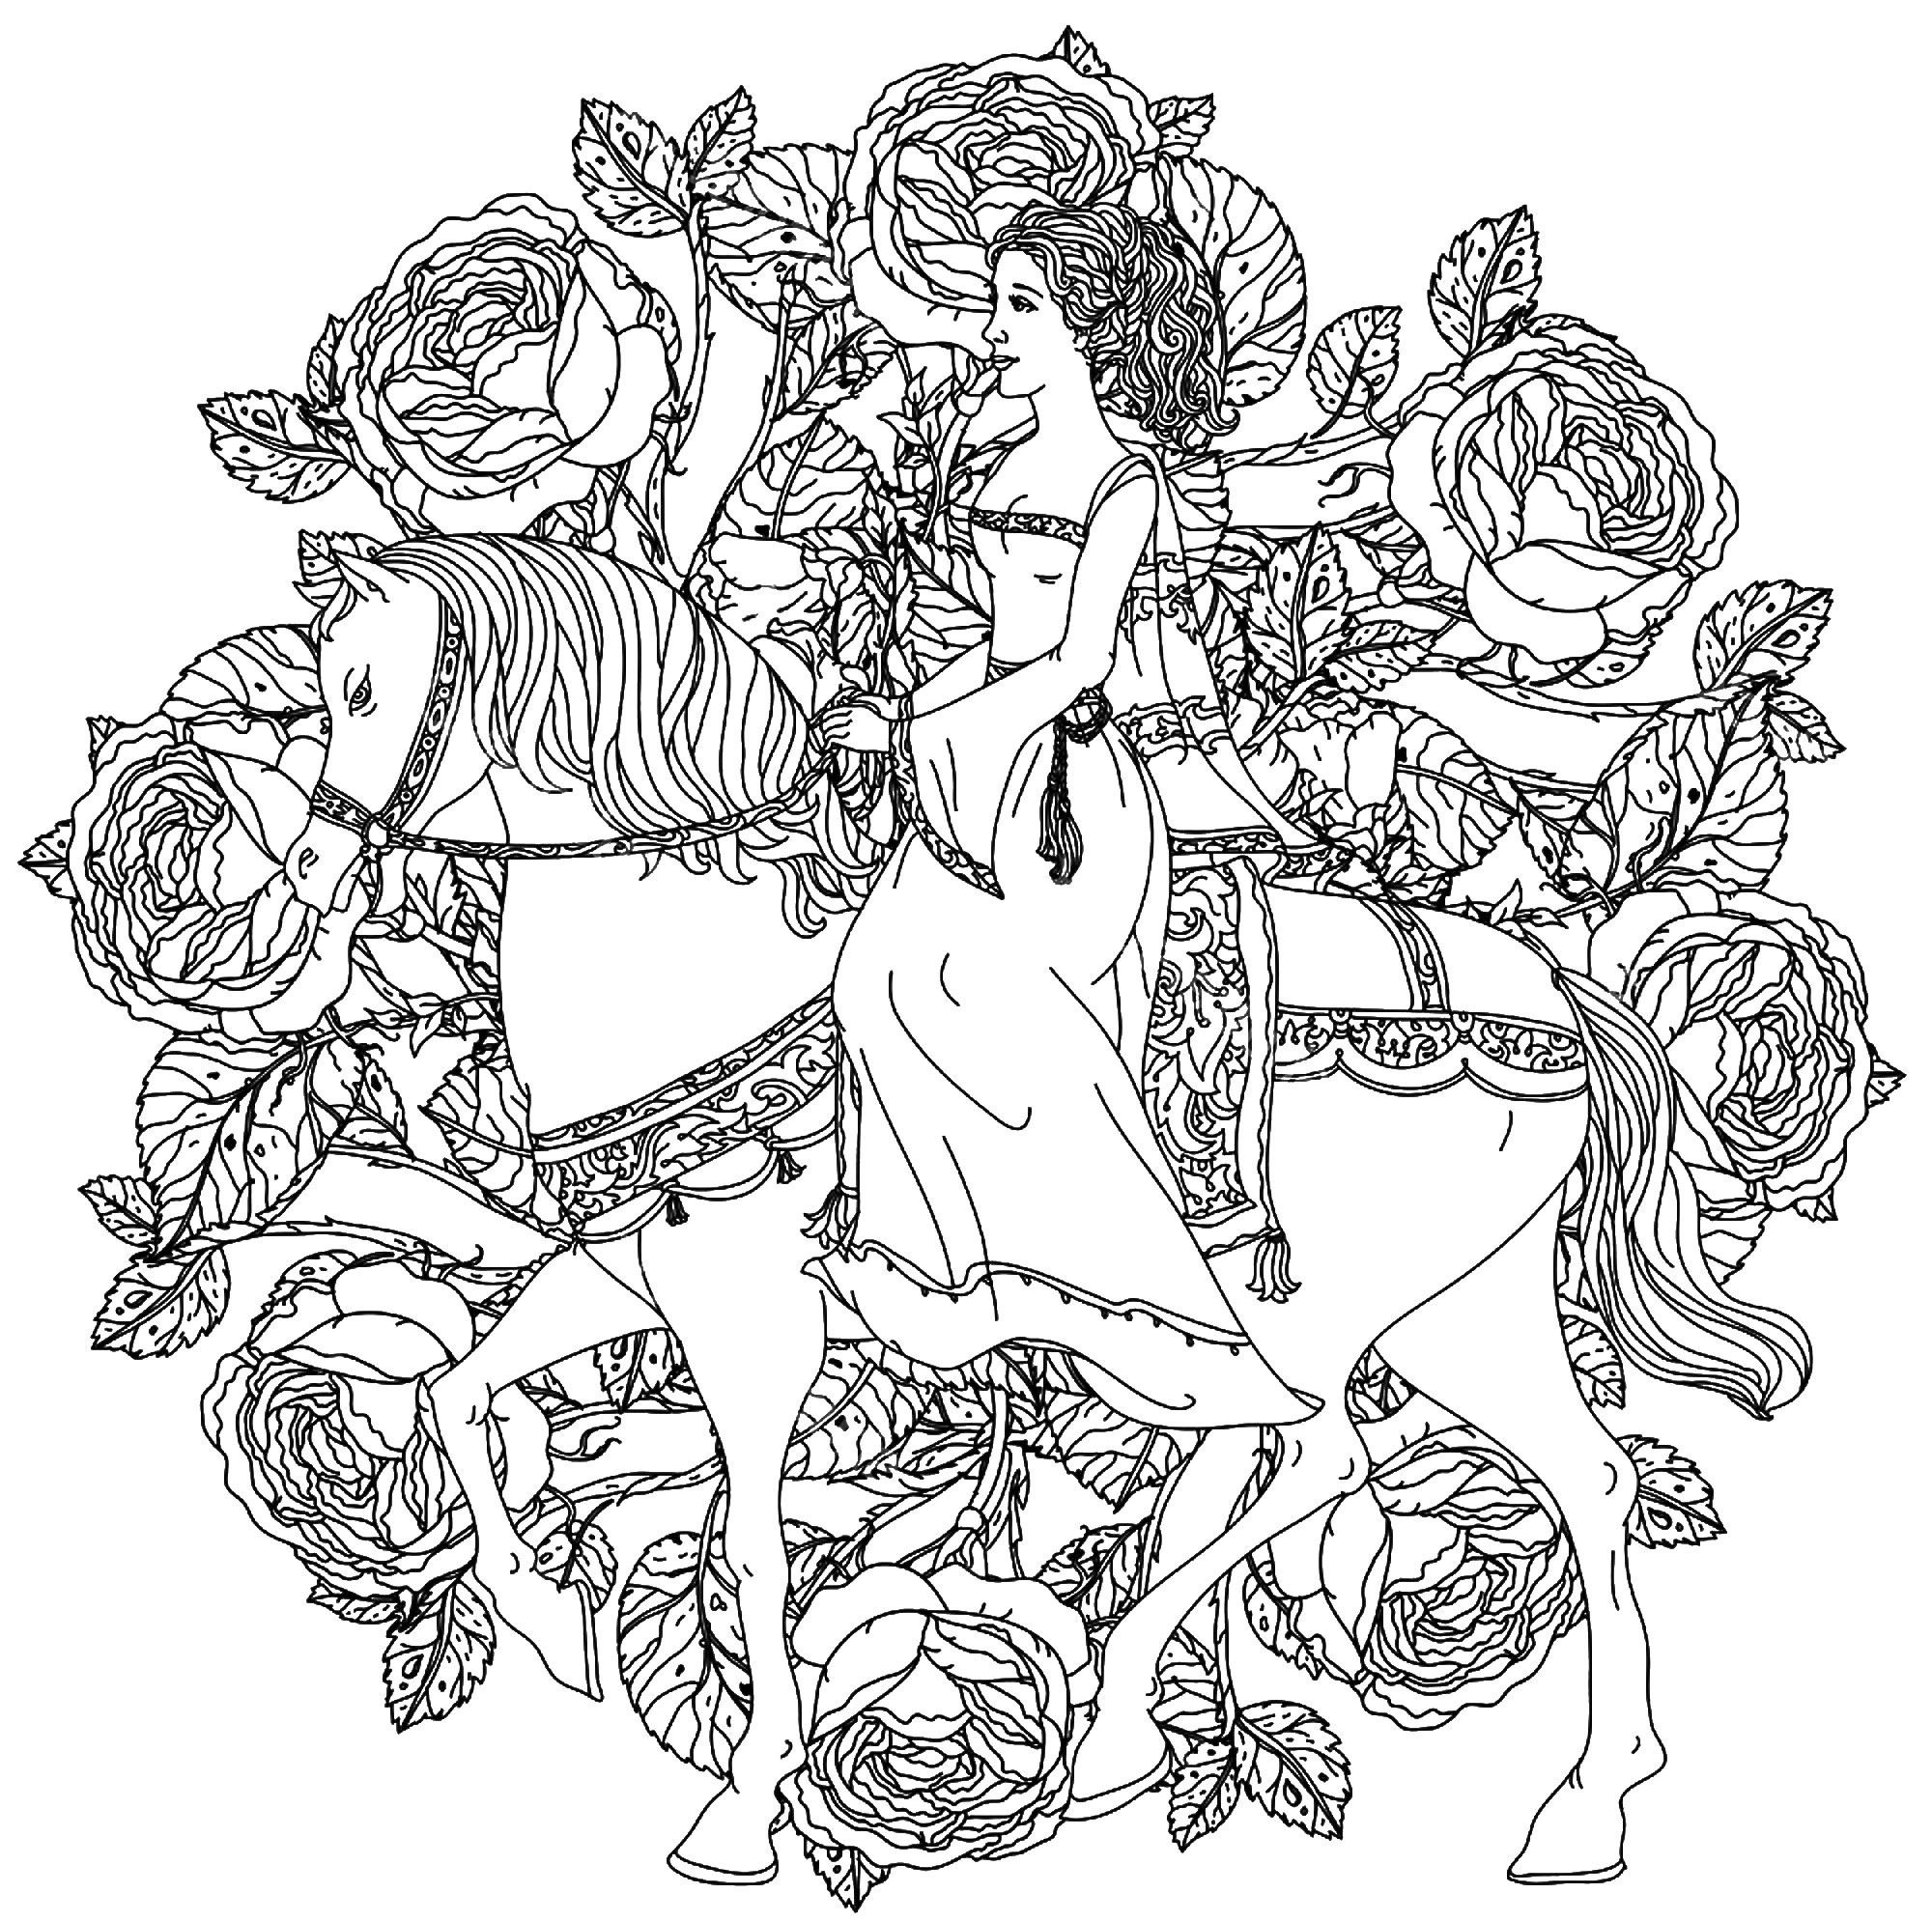 Una principessa che cavalca il suo cavallo in un magnifico mandala di fiori